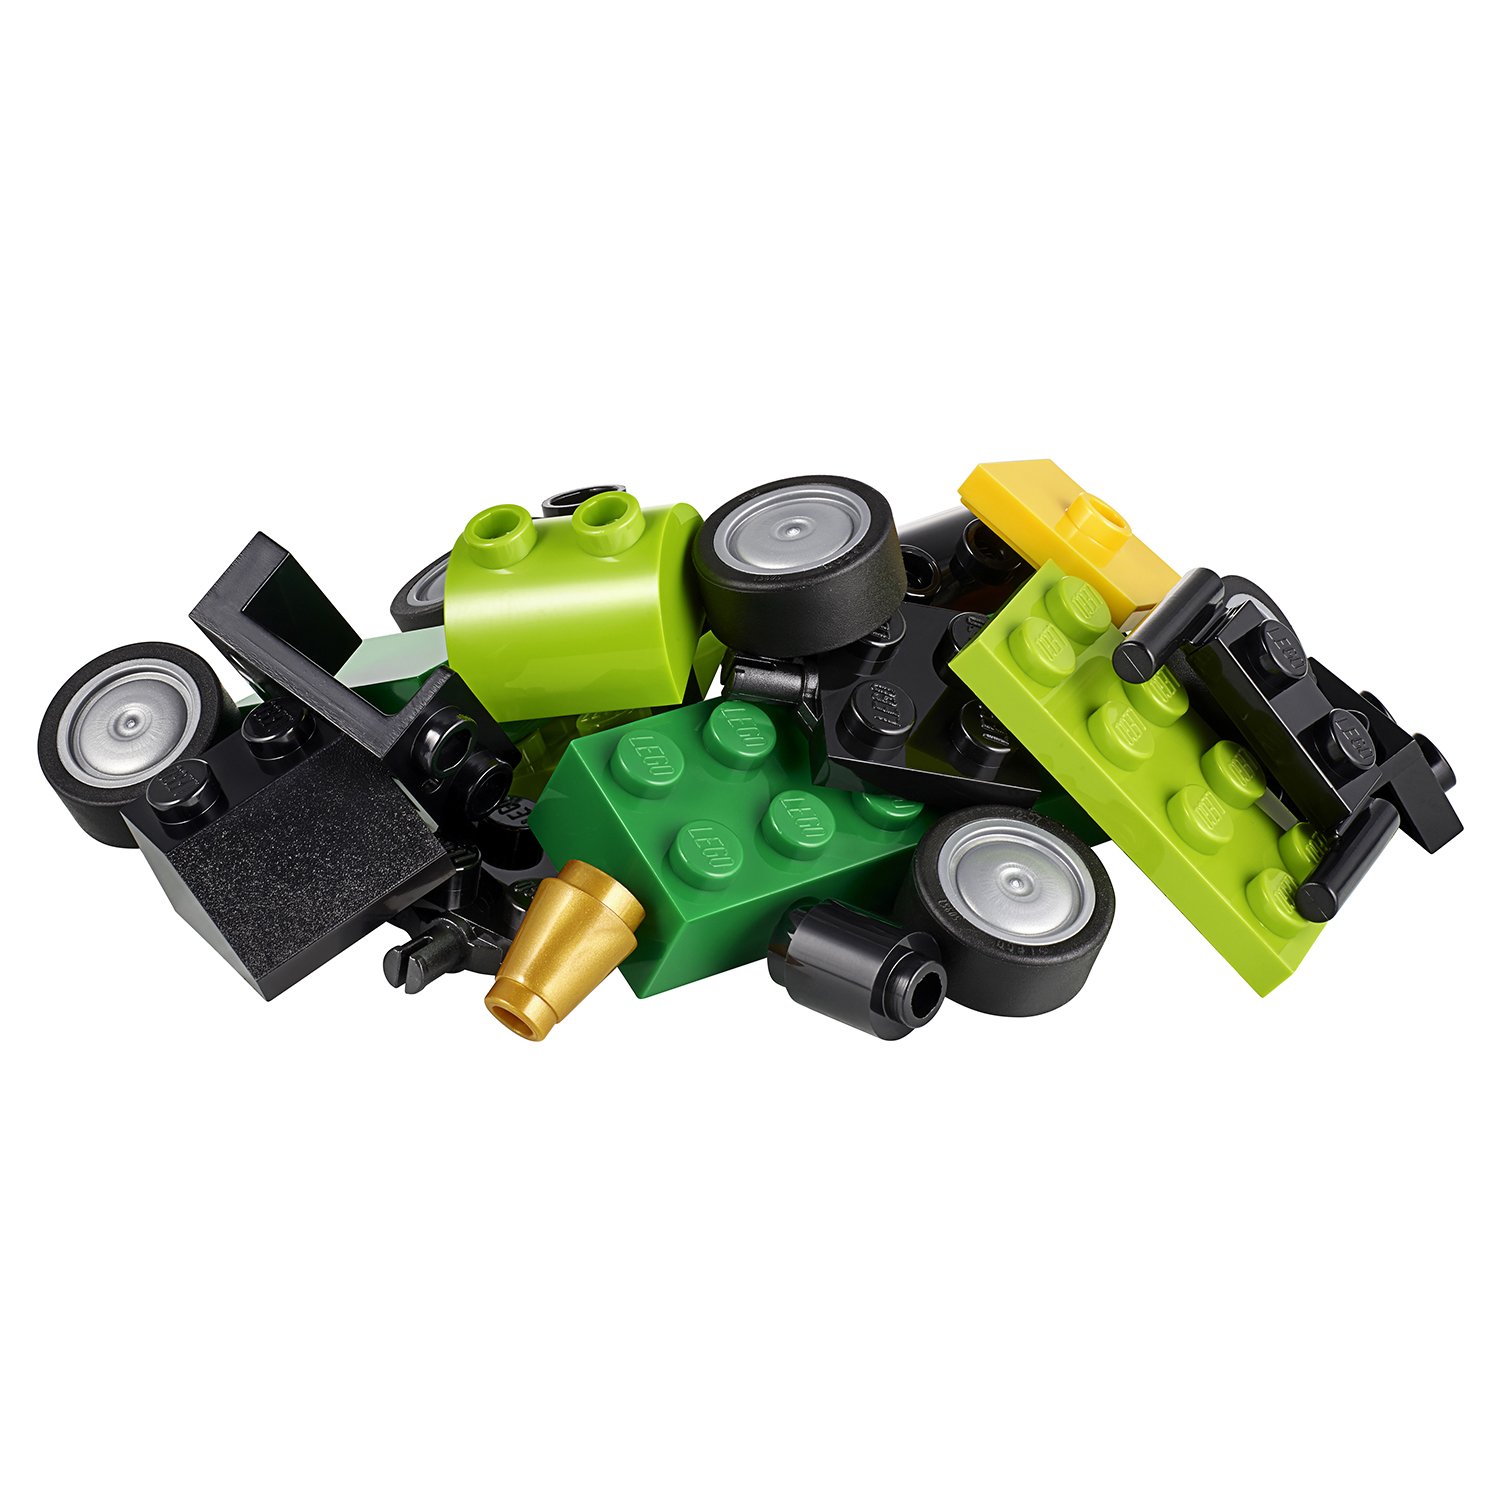 Lego Classic 11001 Модели из кубиков